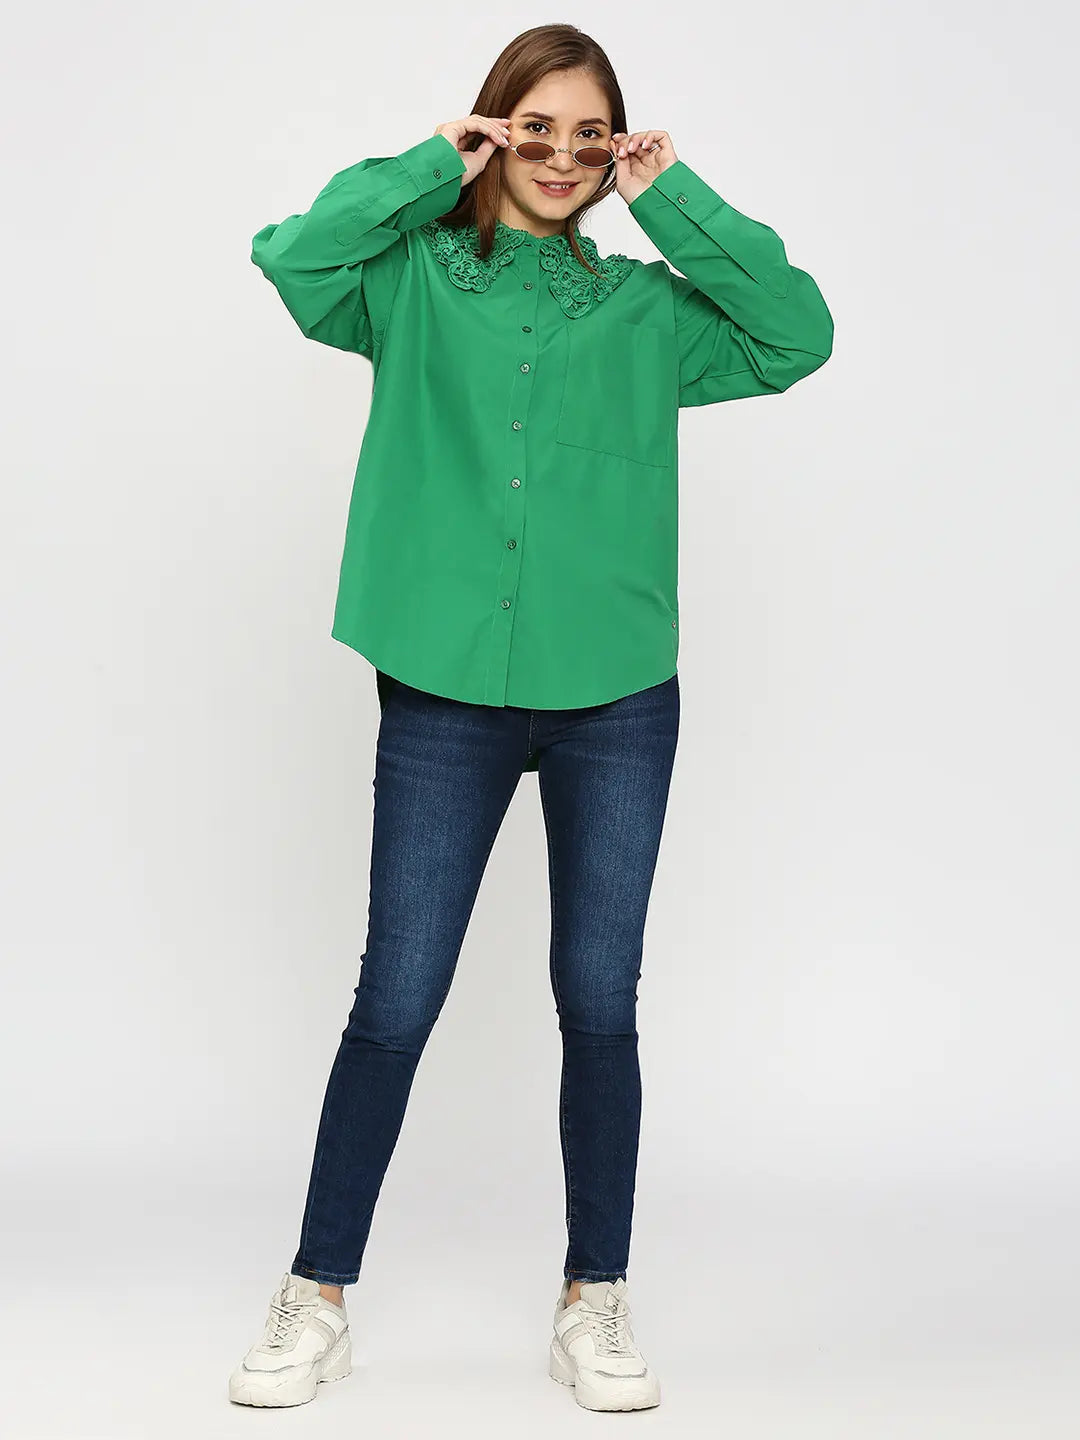 Spykar Women Green Regular Fit Cotton Plain Loose Shirts